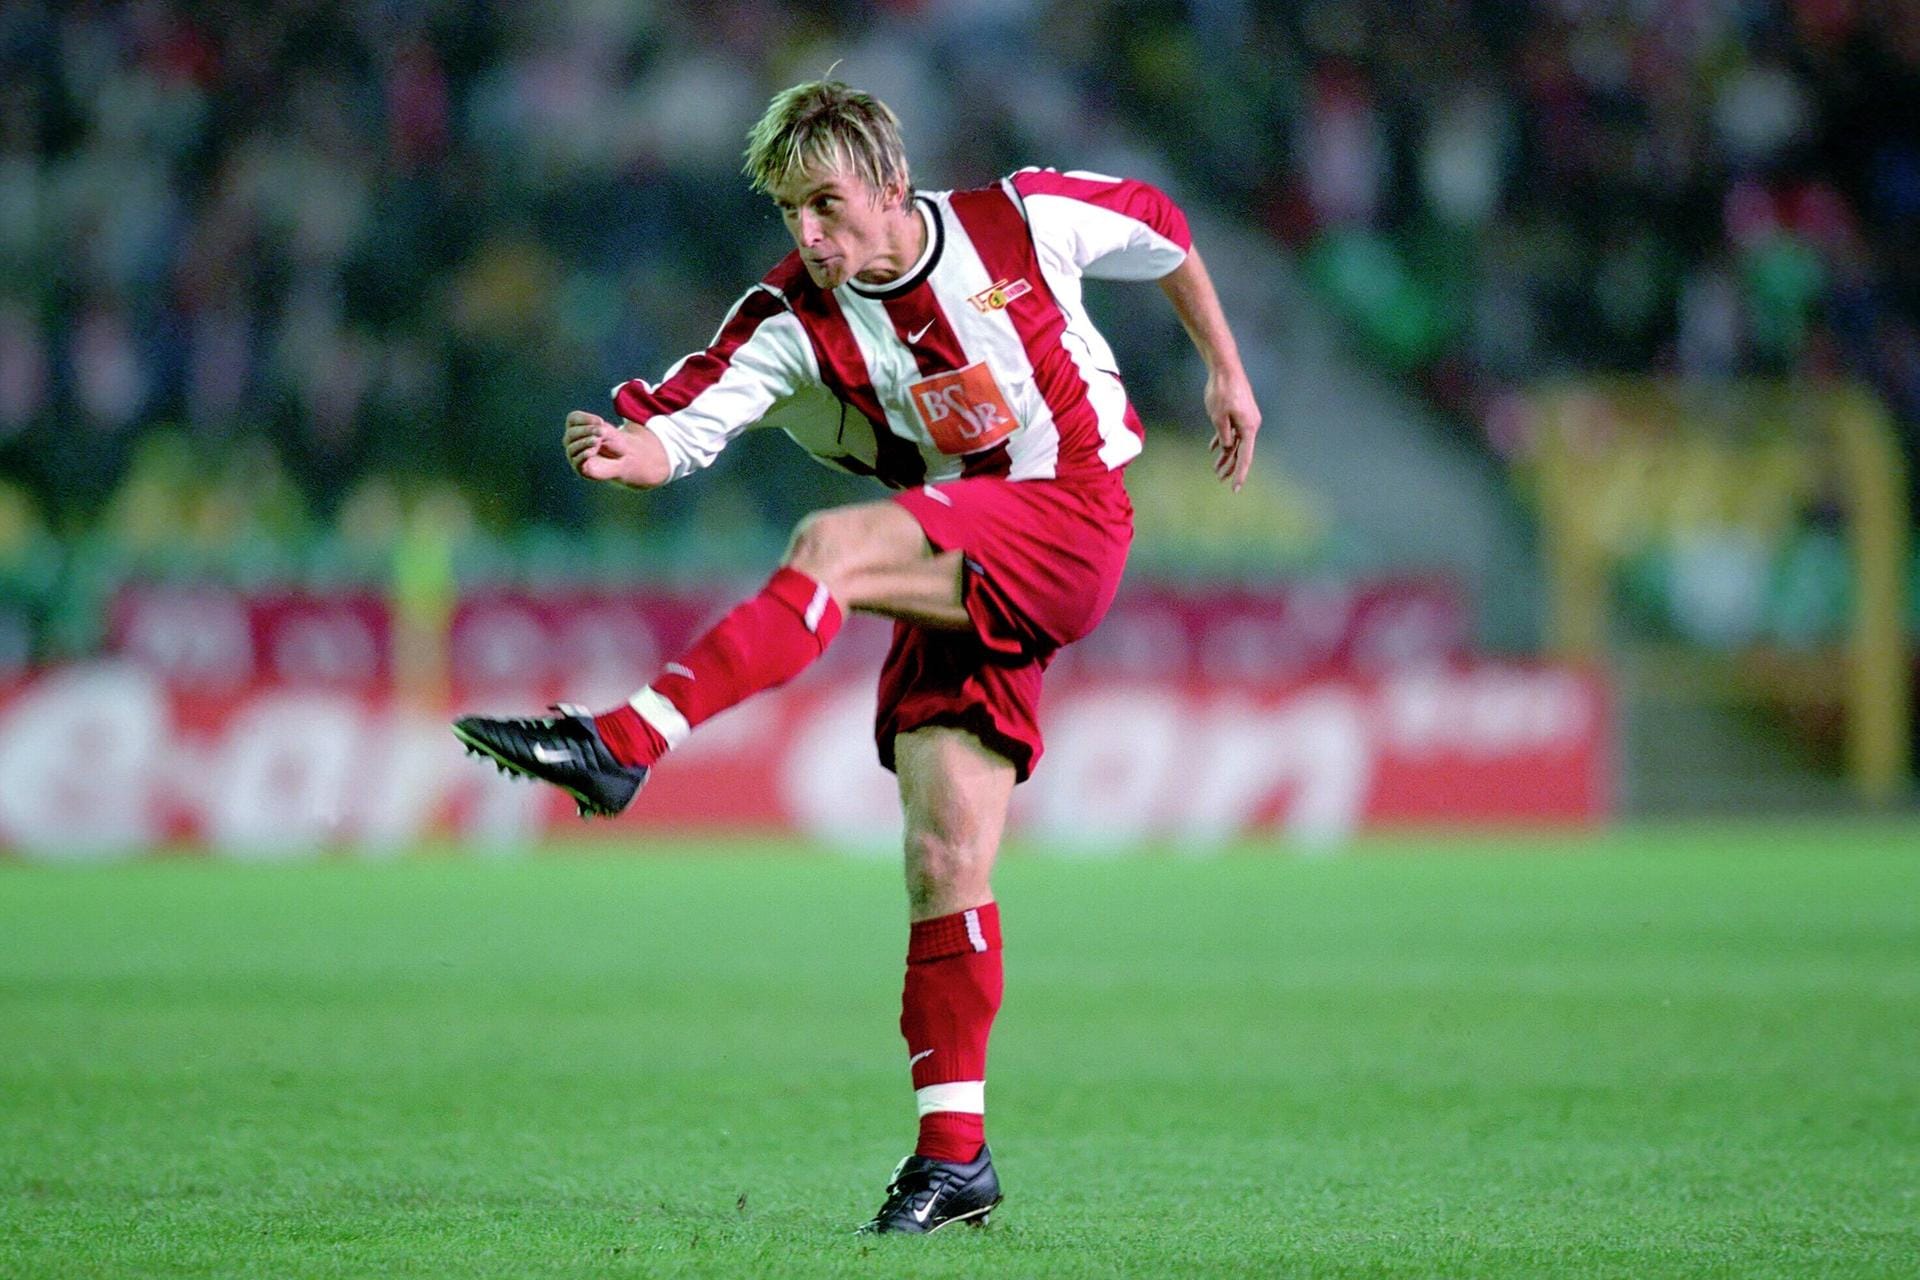 Ronny Nikol (1997-2003): Der Deutsche war während seiner Laufbahn auf der linken Außenseite aktiv. Nach 196 Spielen im rot-weißen Trikot, besitzt er heute die Hallen-Fußballarena "BoBo" in Berlin.